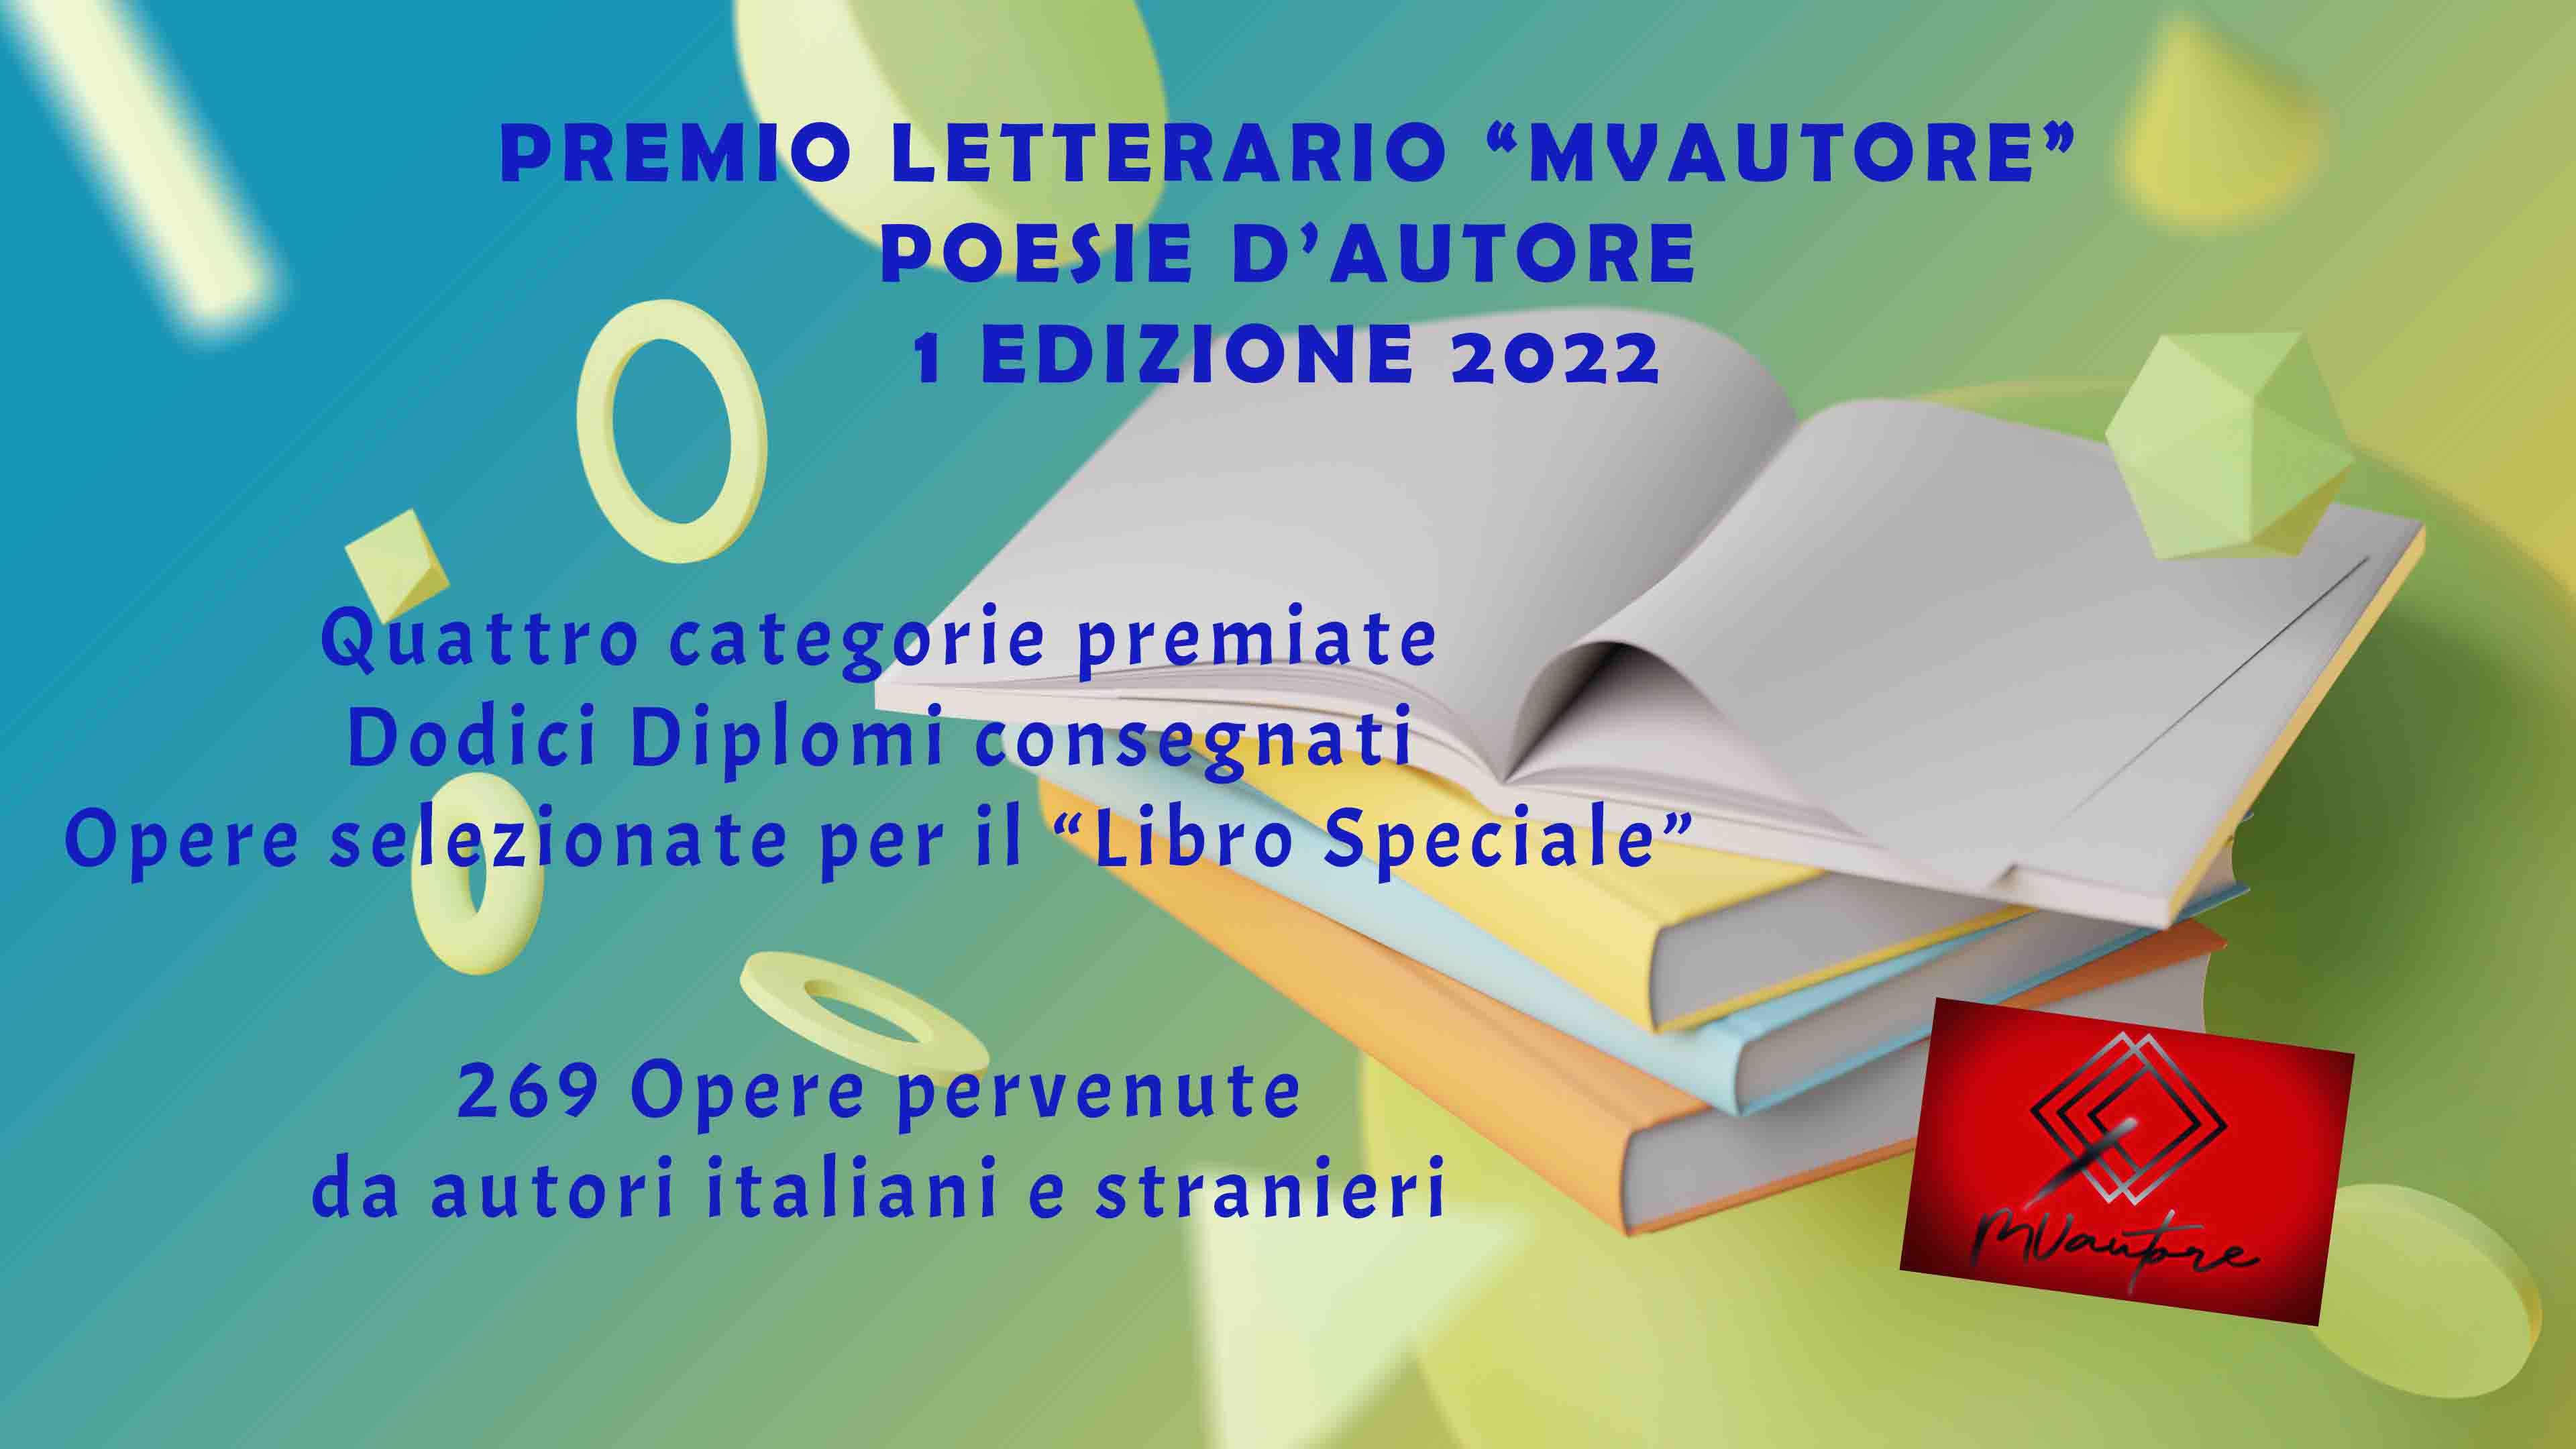 Concorso Letterario “MVautore” Poesie d’Autore, conclusa la prima Edizione 2022 con la partecipazione di 269 autori italiani e stranieri